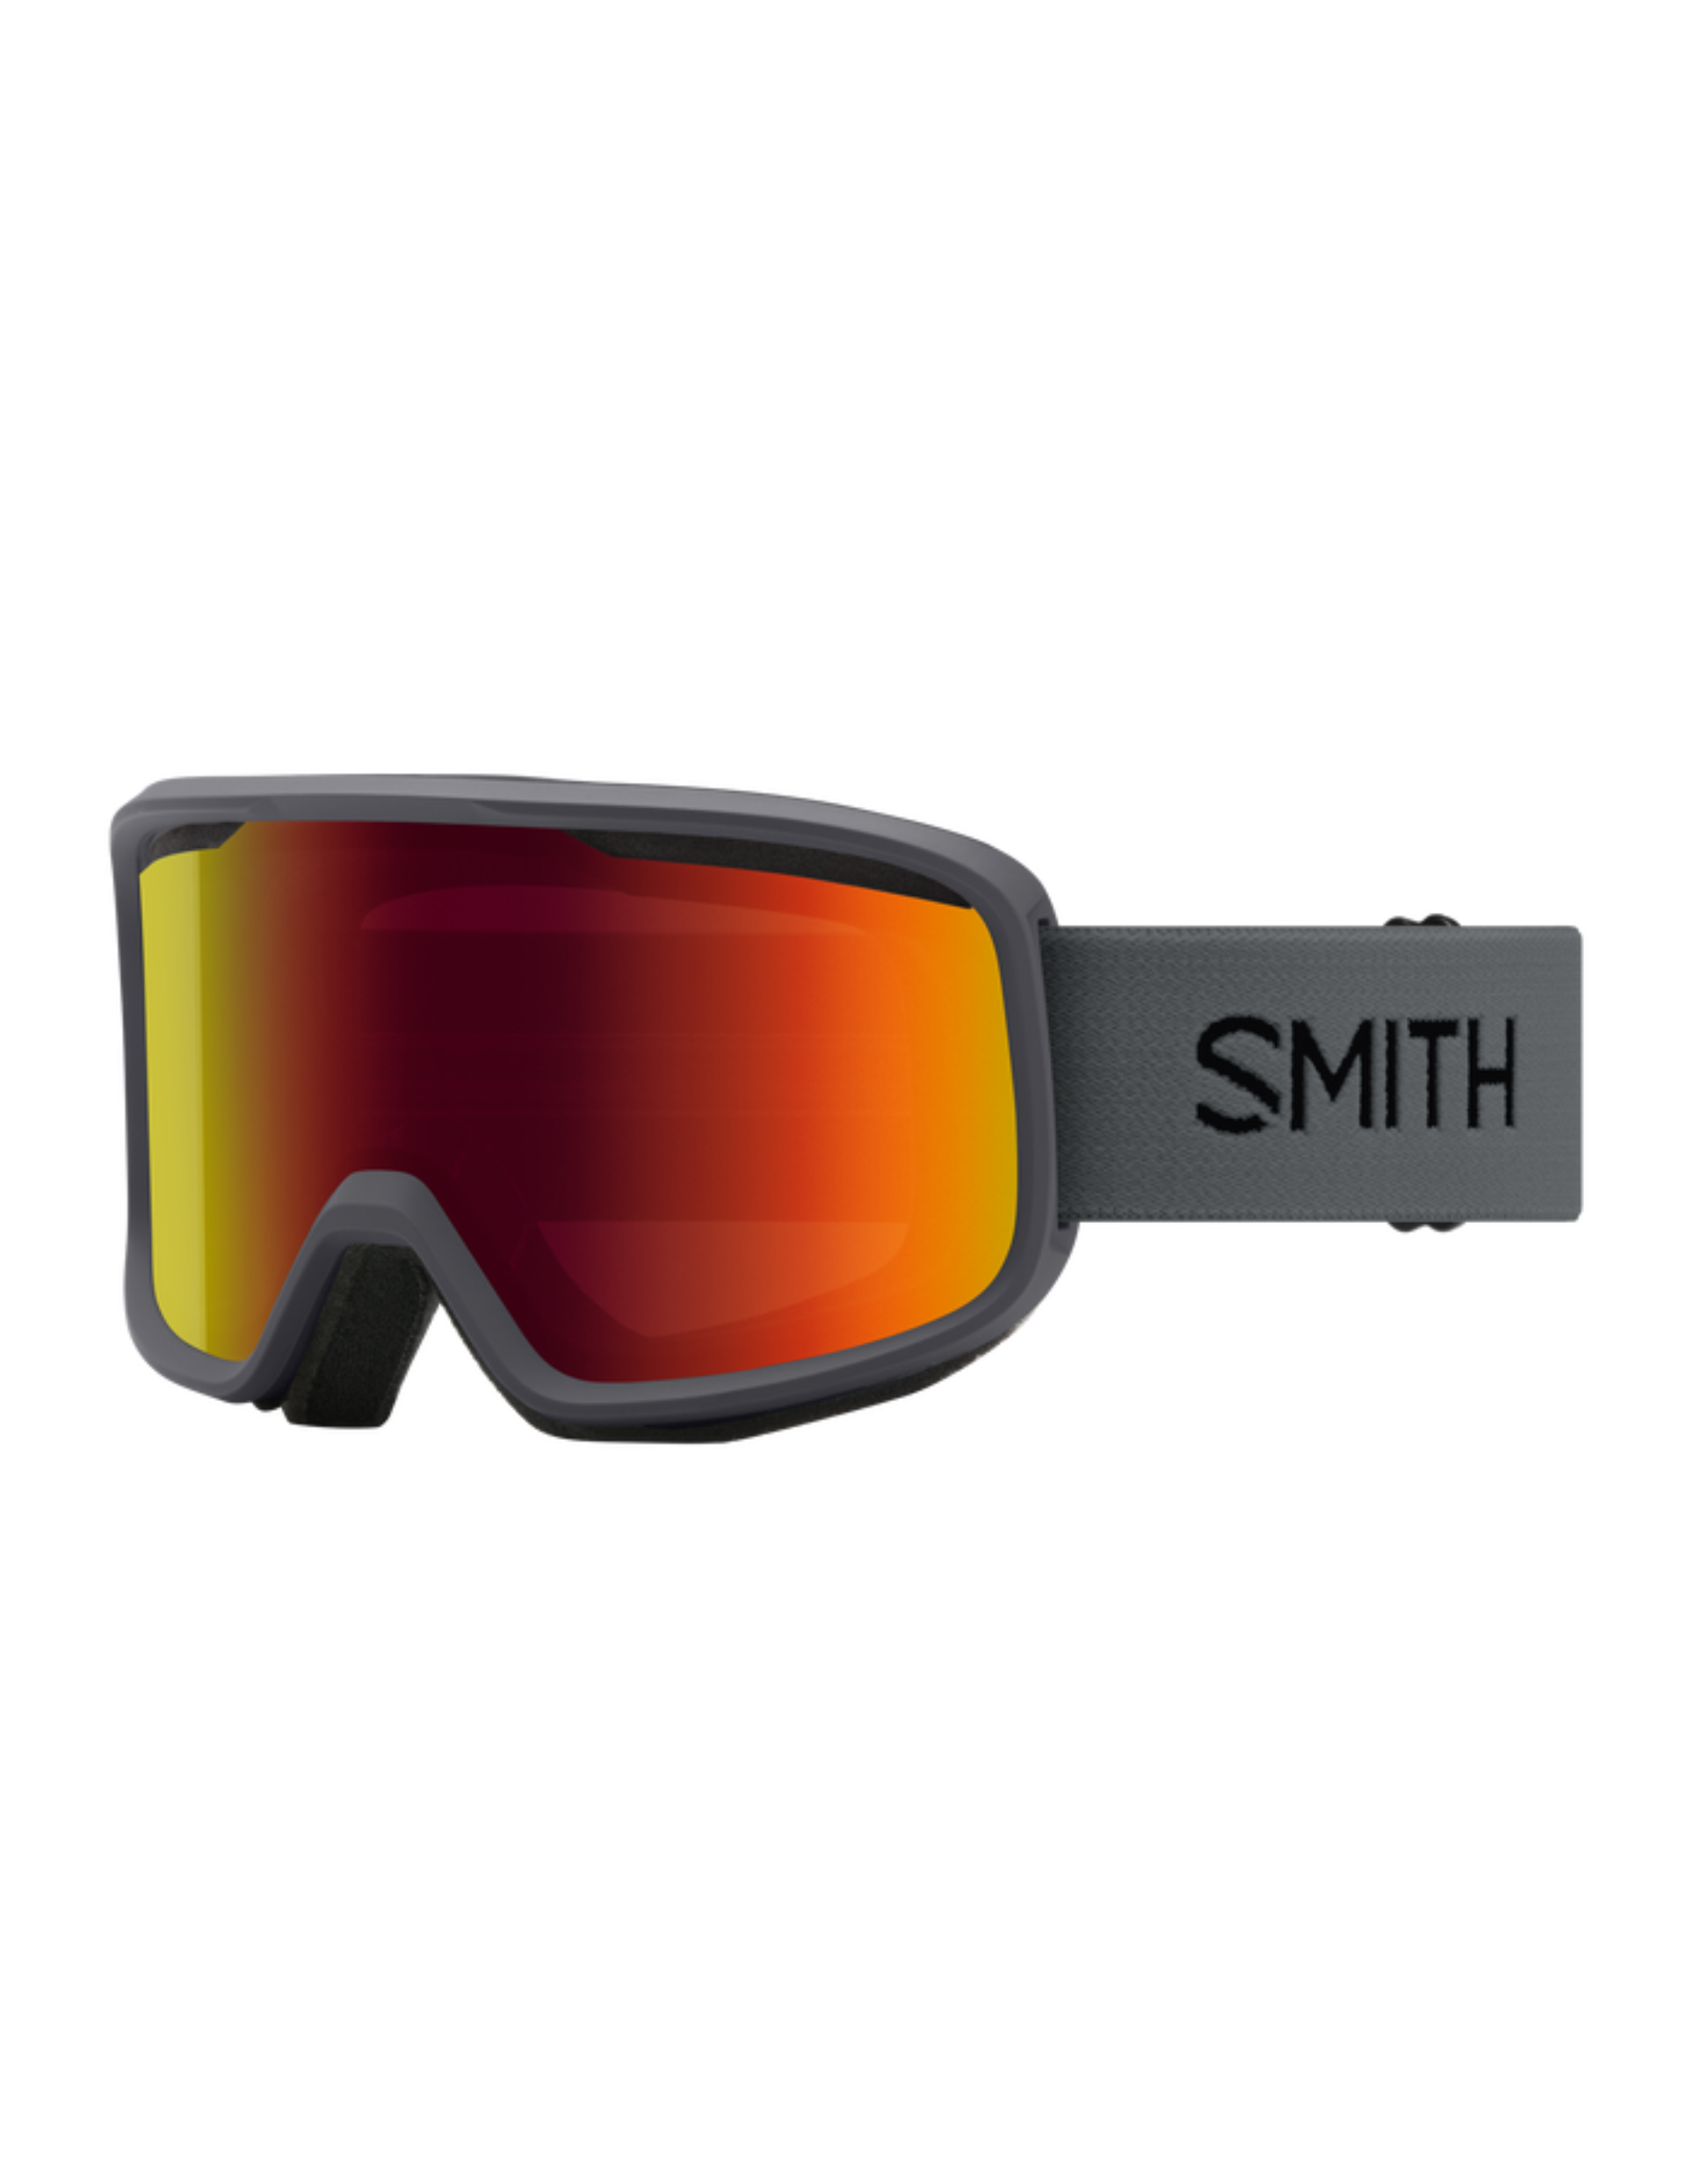 Masque Smith Frontier avec monture Charcoal et écran classe 3 Red Sol-X Mirror